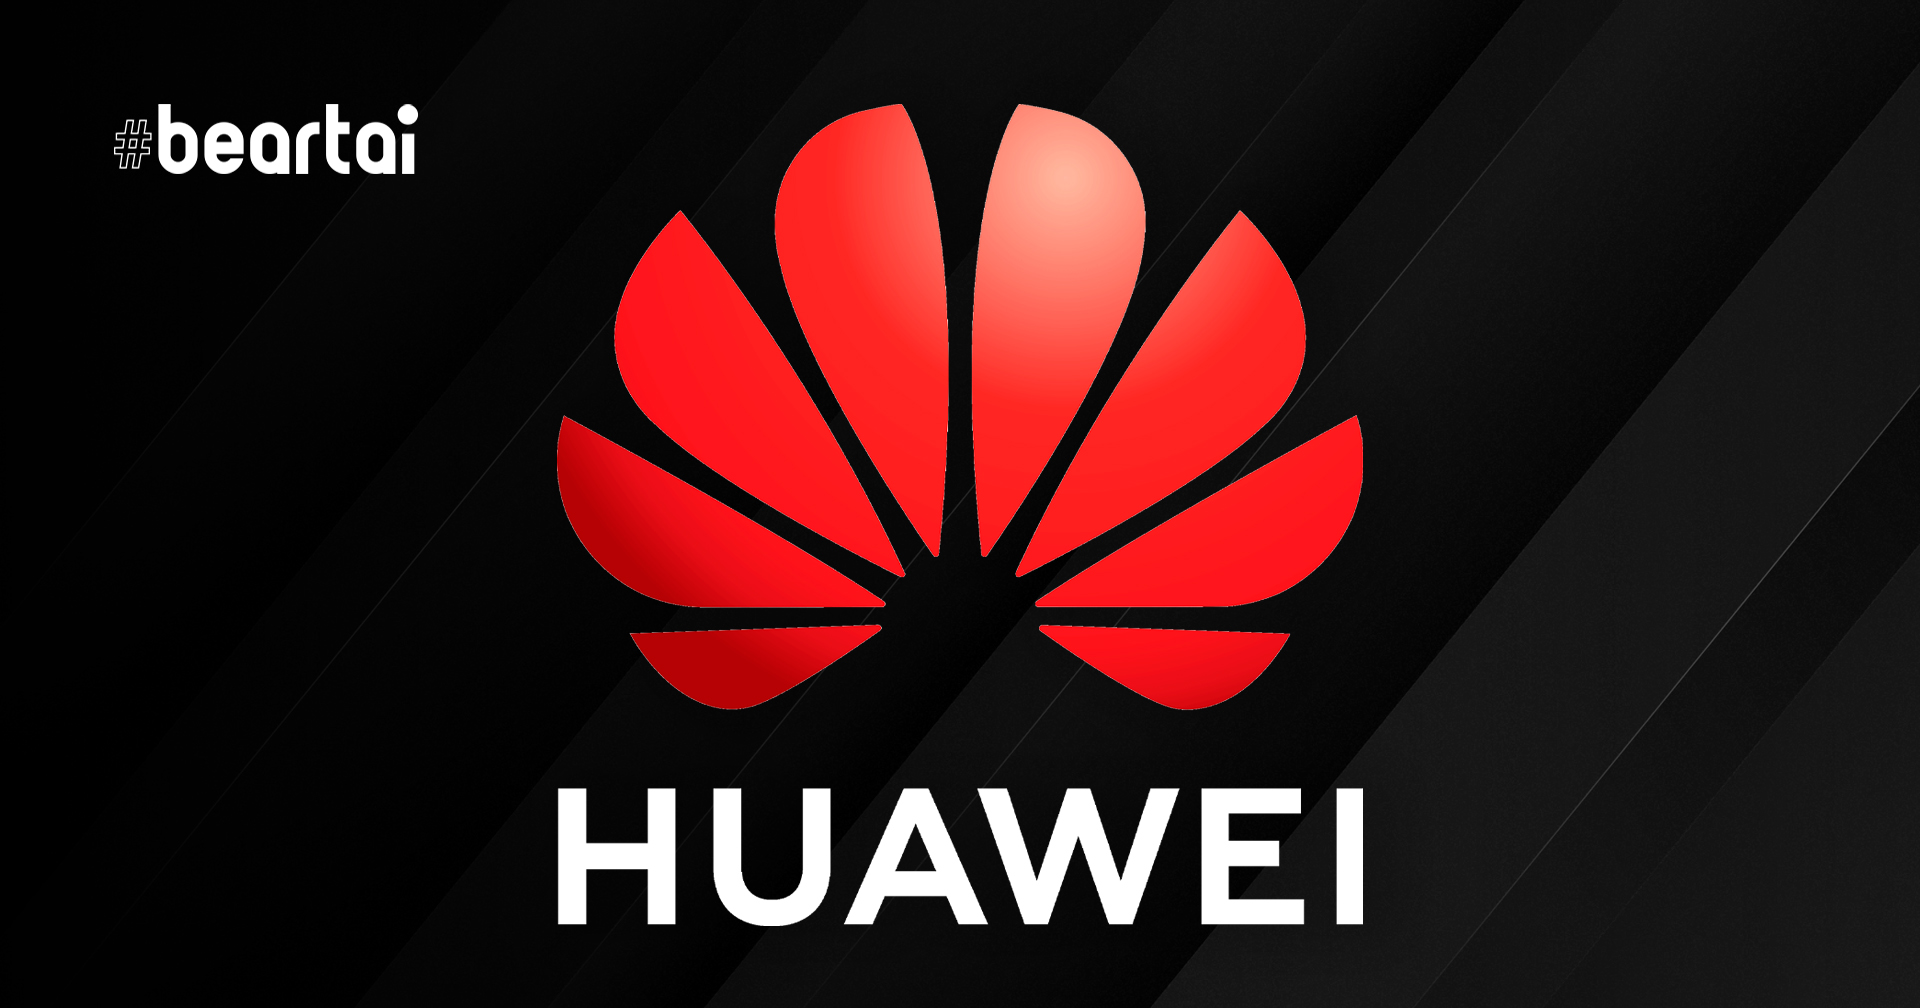 อังกฤษจะห้ามติดตั้งอุปกรณ์ใหม่ของ Huawei ในเครือข่าย 5G ตั้งแต่กันยายน 2021